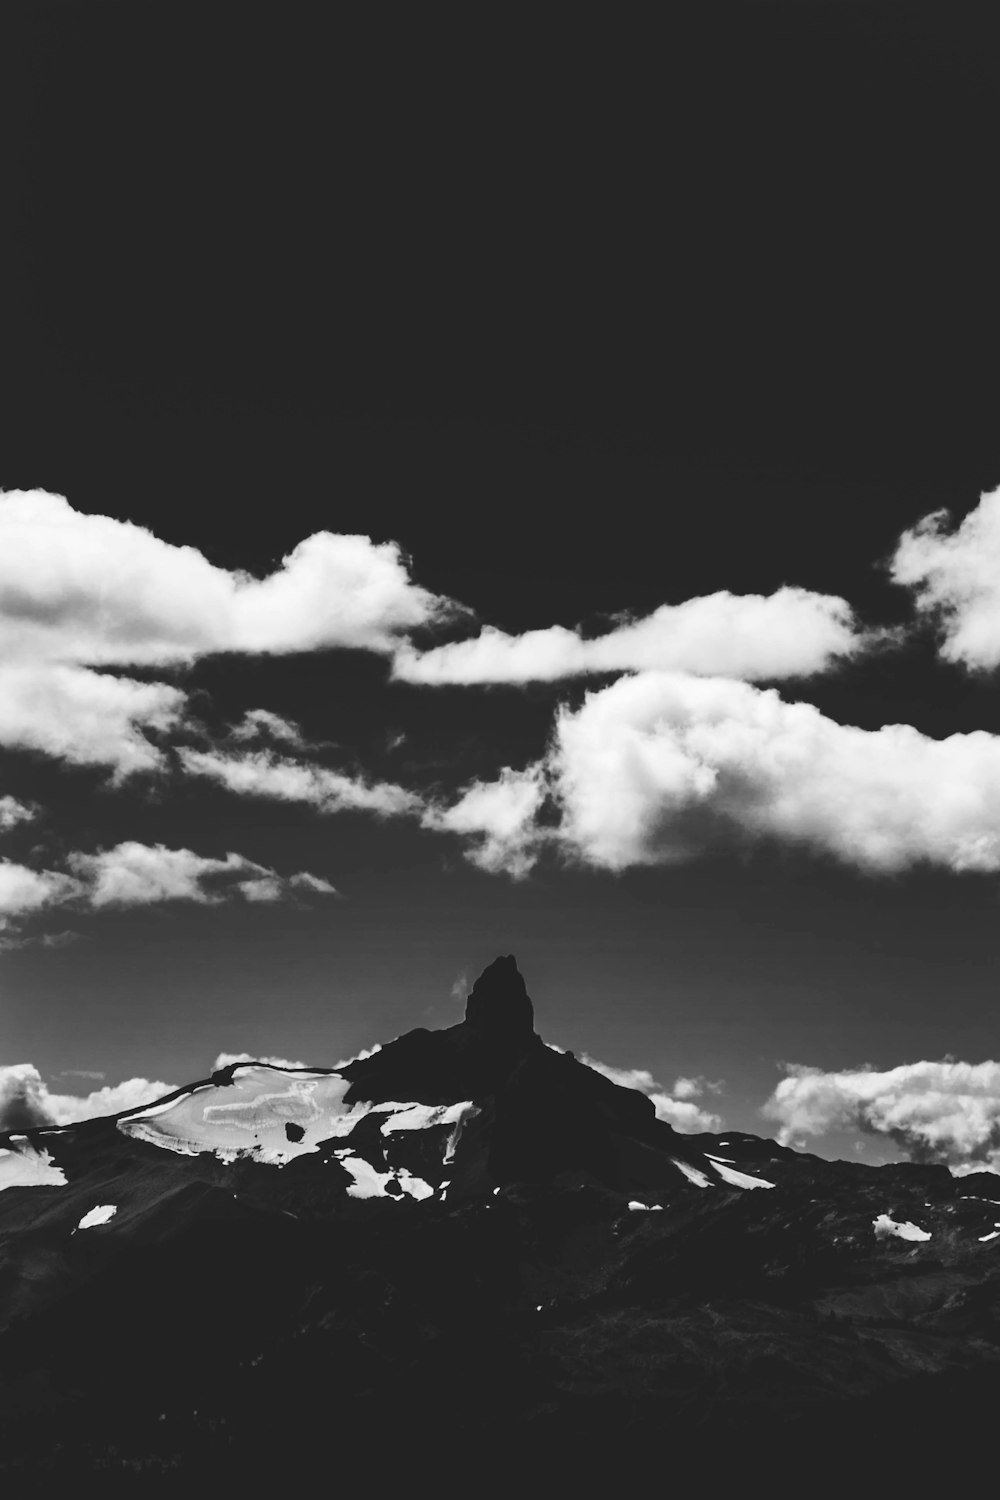 fotografia in scala di grigi di montagna e nuvole